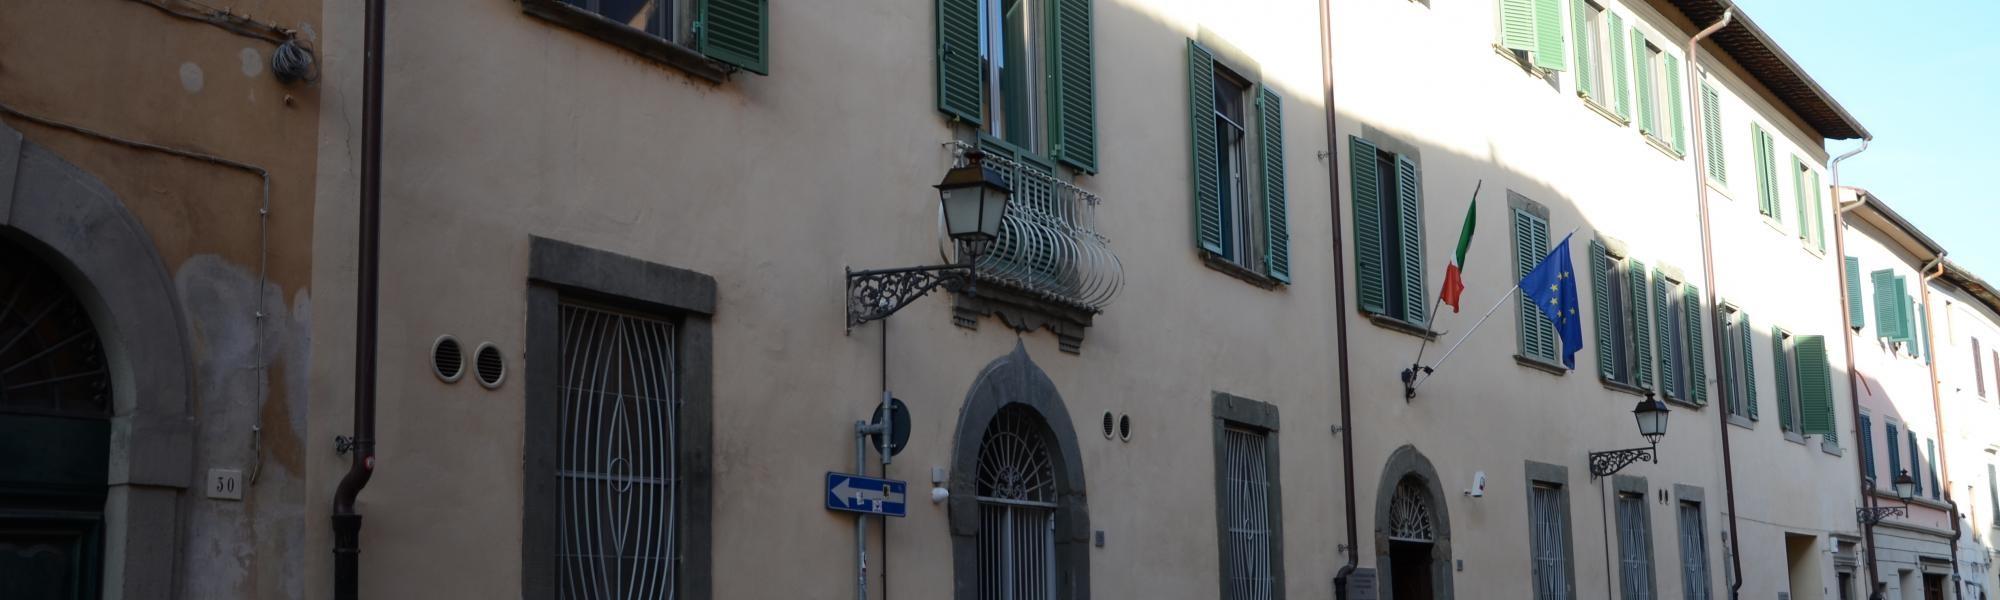 Collegio dedicato a Tiziano Terzani in via San Lorenzo 26 (L. Corevi, Comune di Pisa)